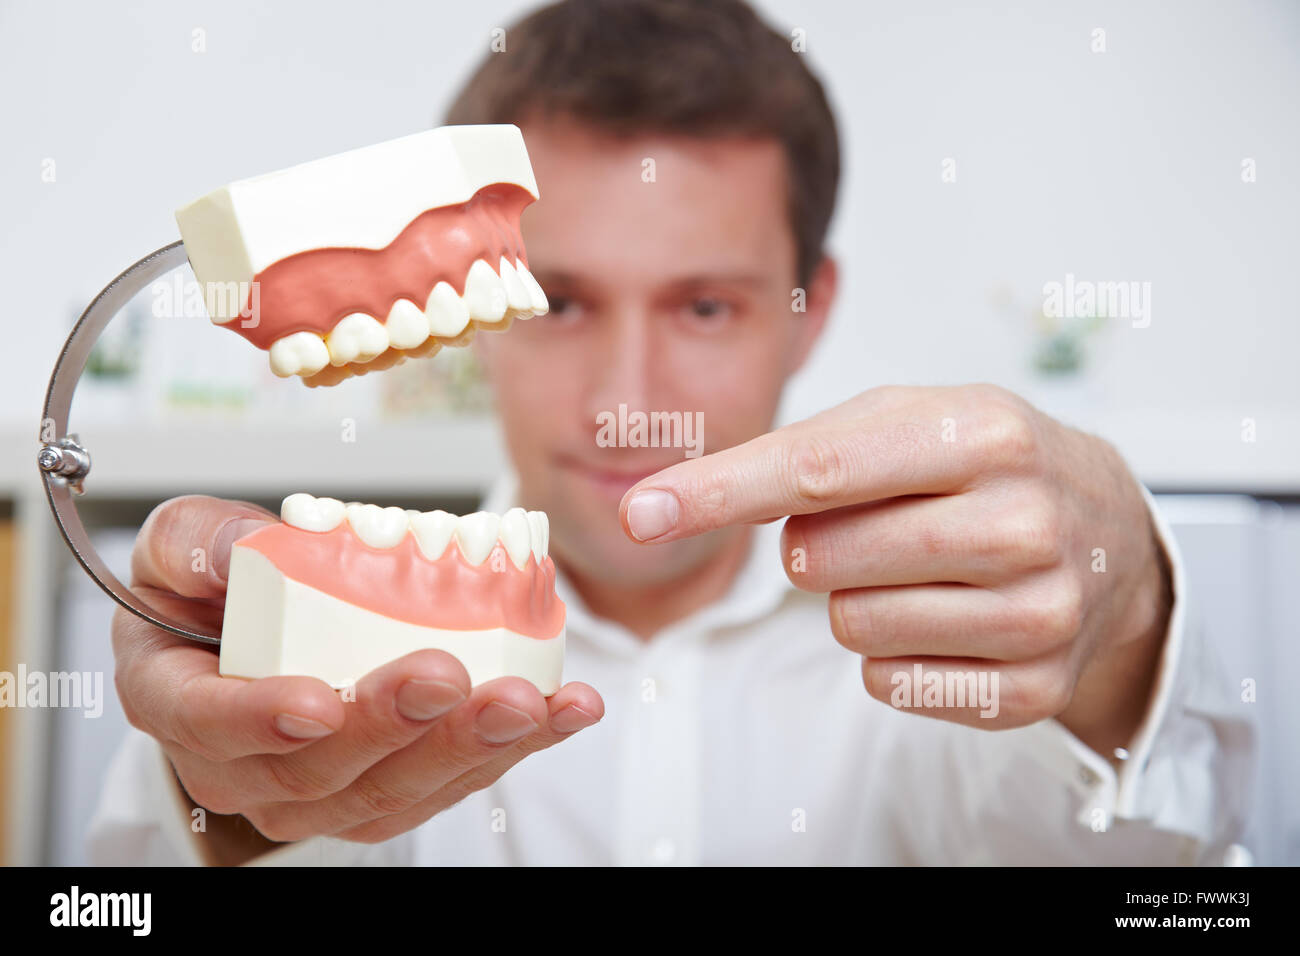 Как называется протезист. Ортопедическая стоматология. Стоматолог. Снимки людей с протезами зубов.